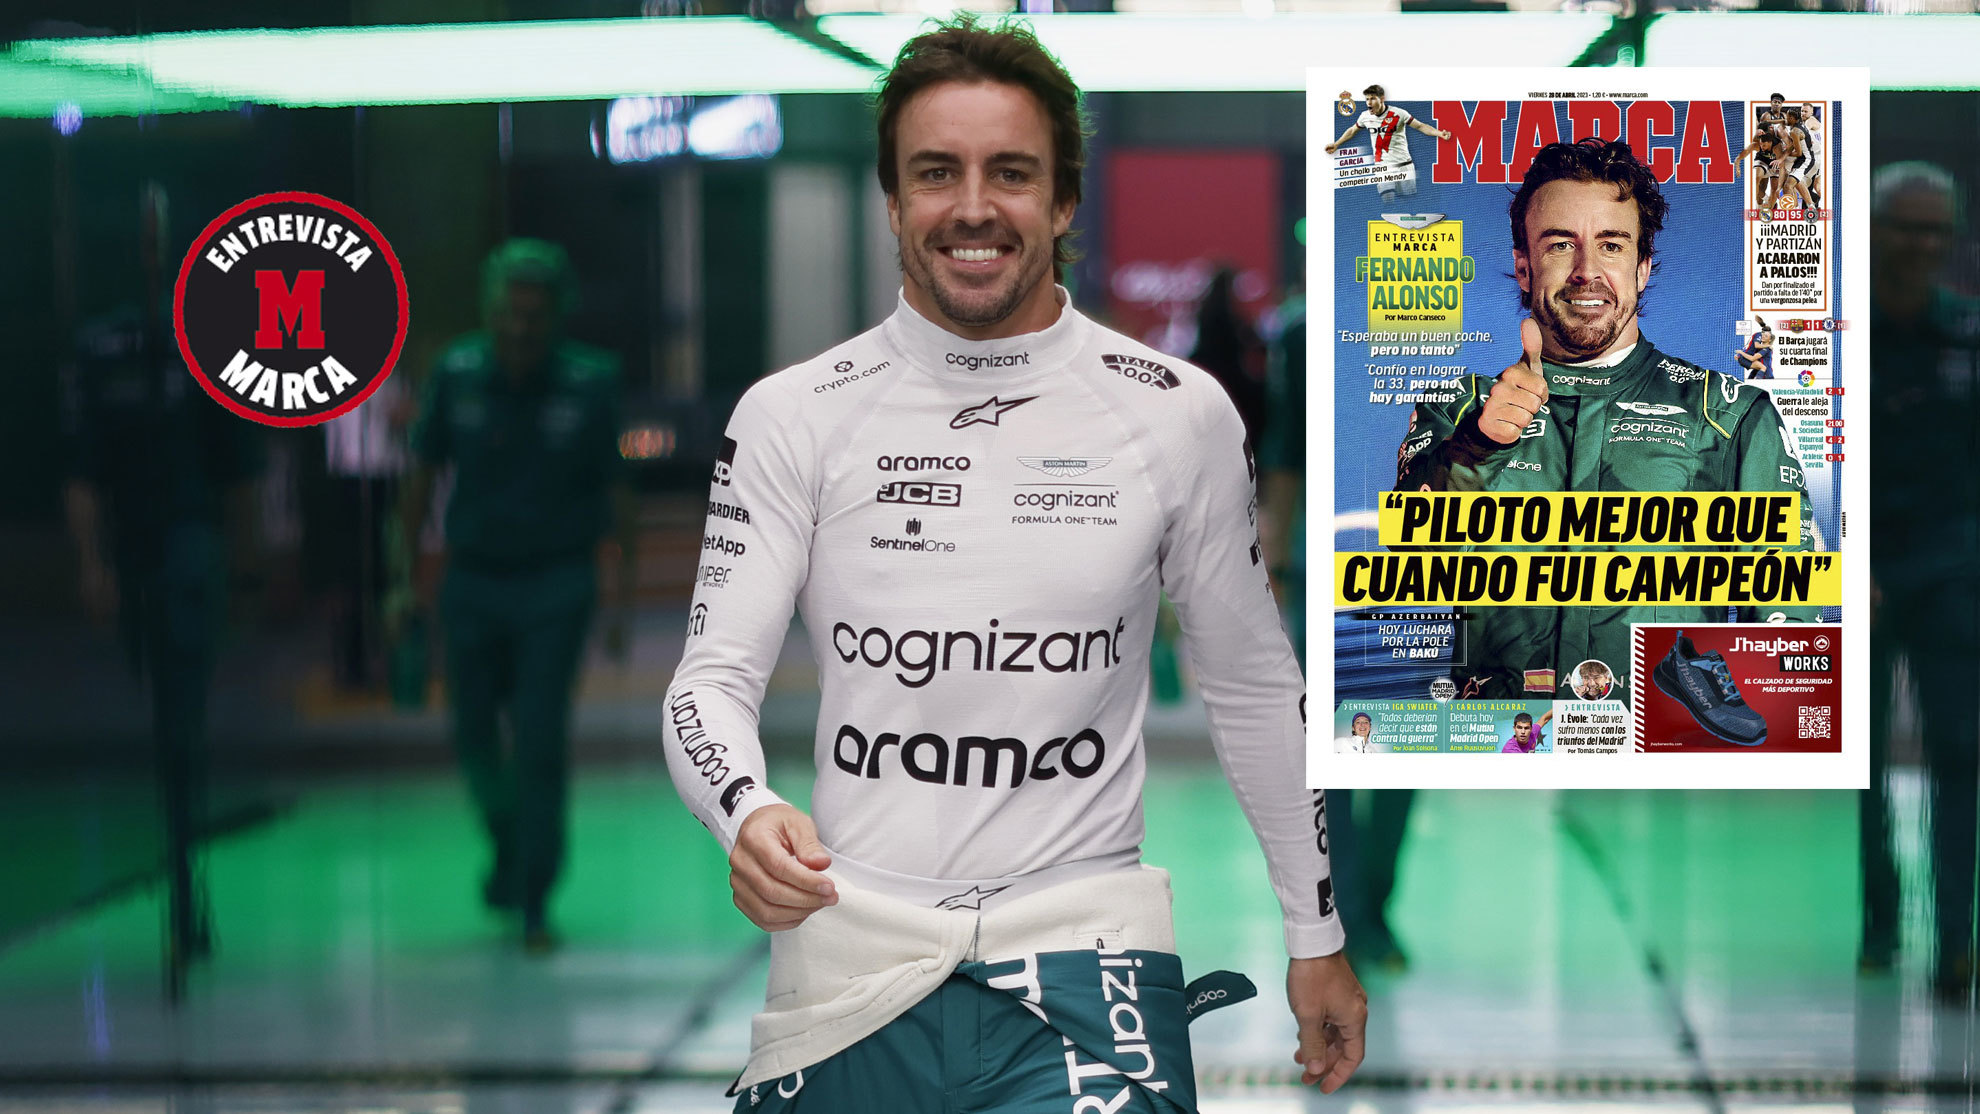 Fernando Alonso: Piloto mejor que cuando fui campeón